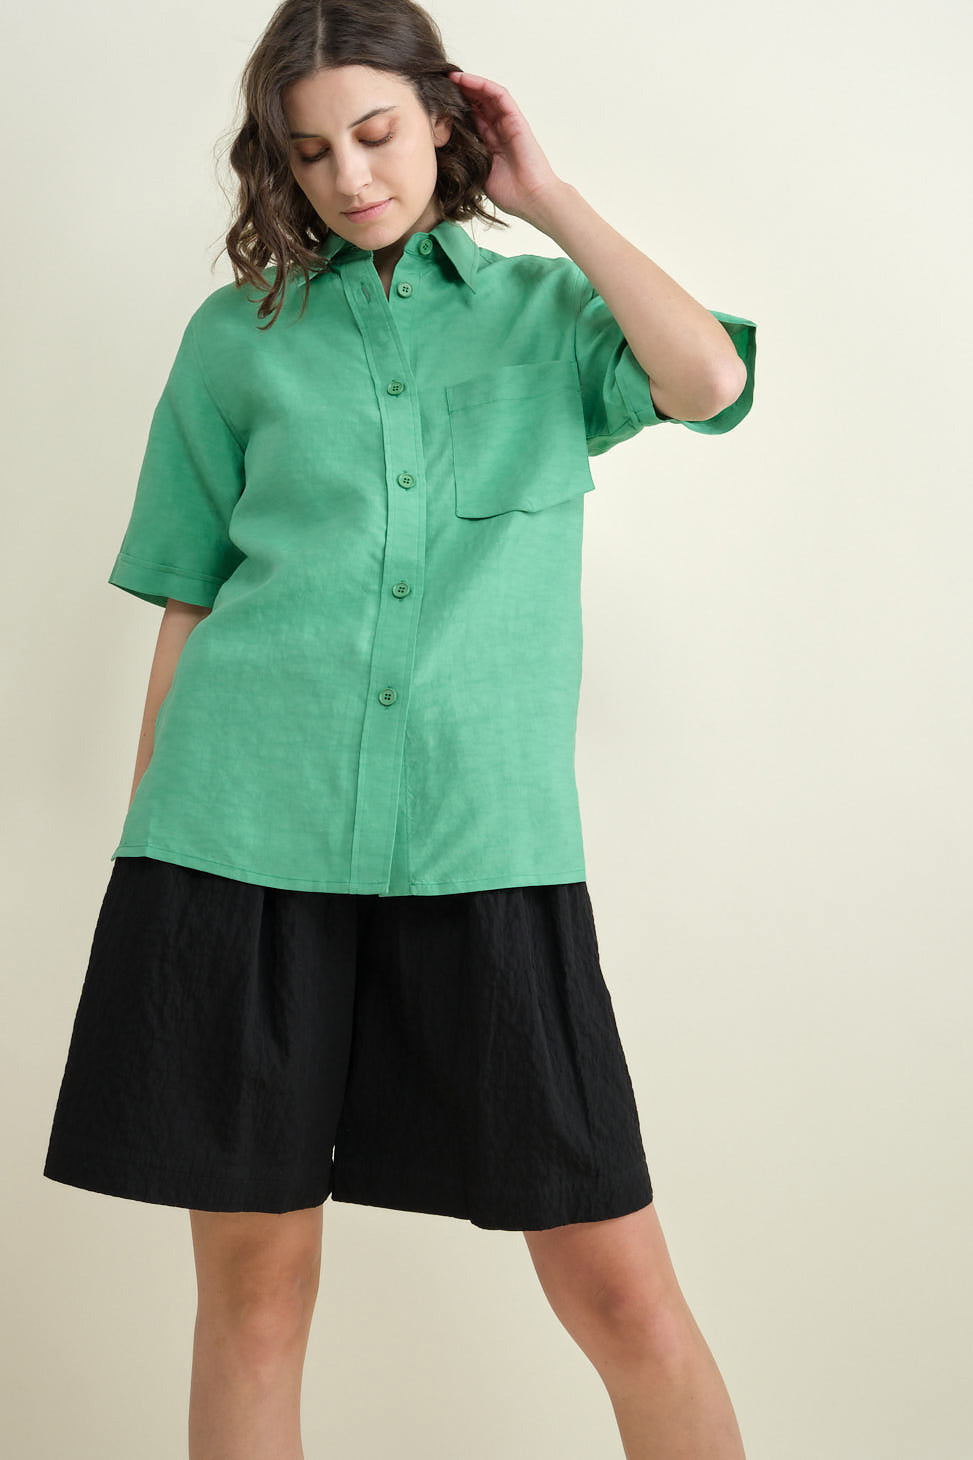 Tarusi Short Sleeve Shirt in Jade